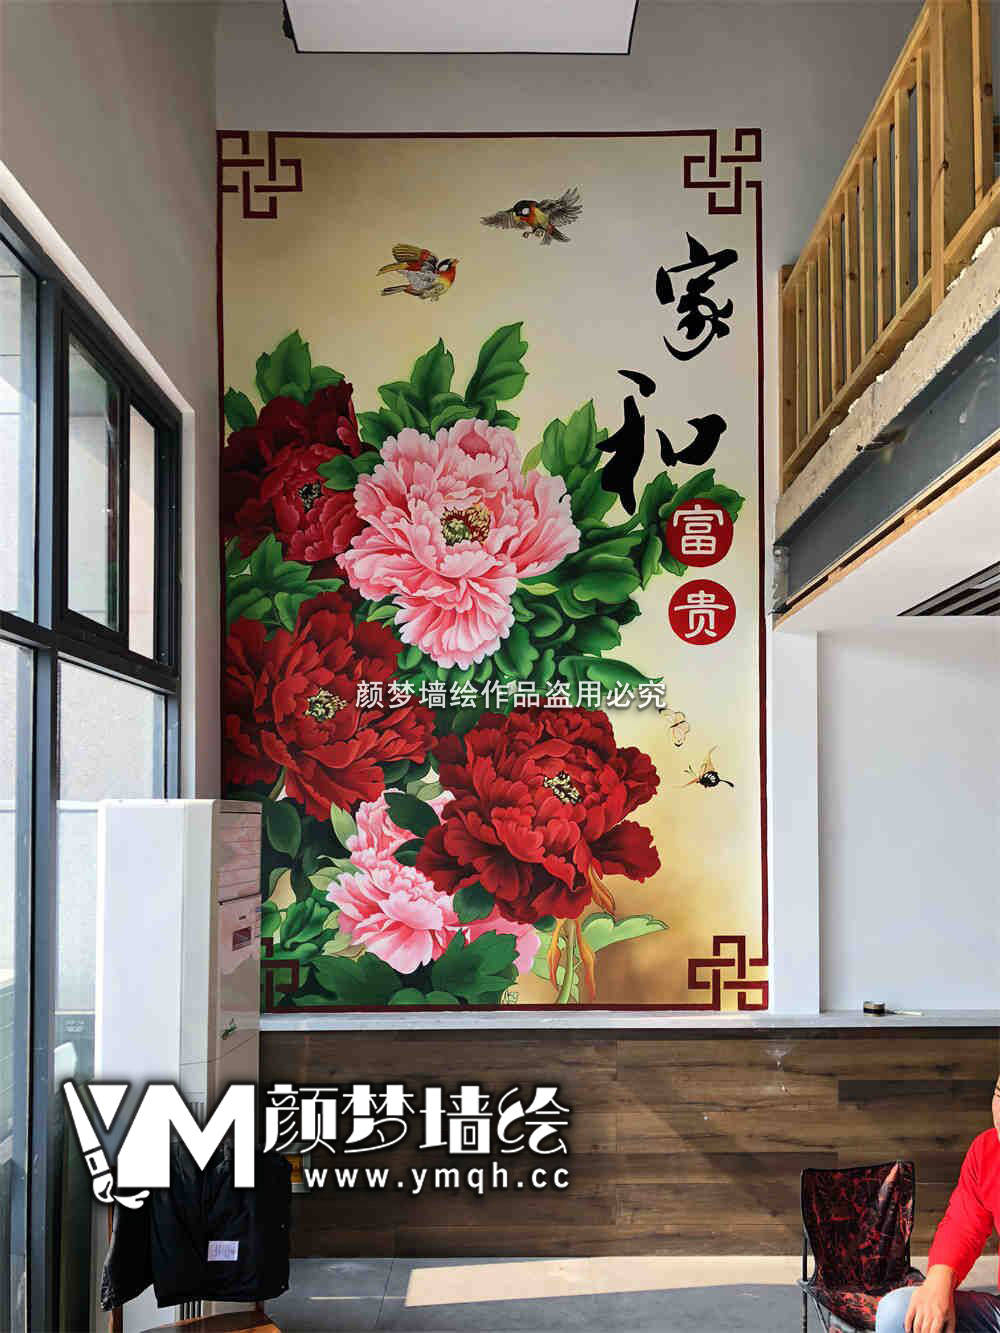 广西东盟经济技术开发区墙体彩绘探秘——江滨路墙绘公司打造南宁“网红墙”